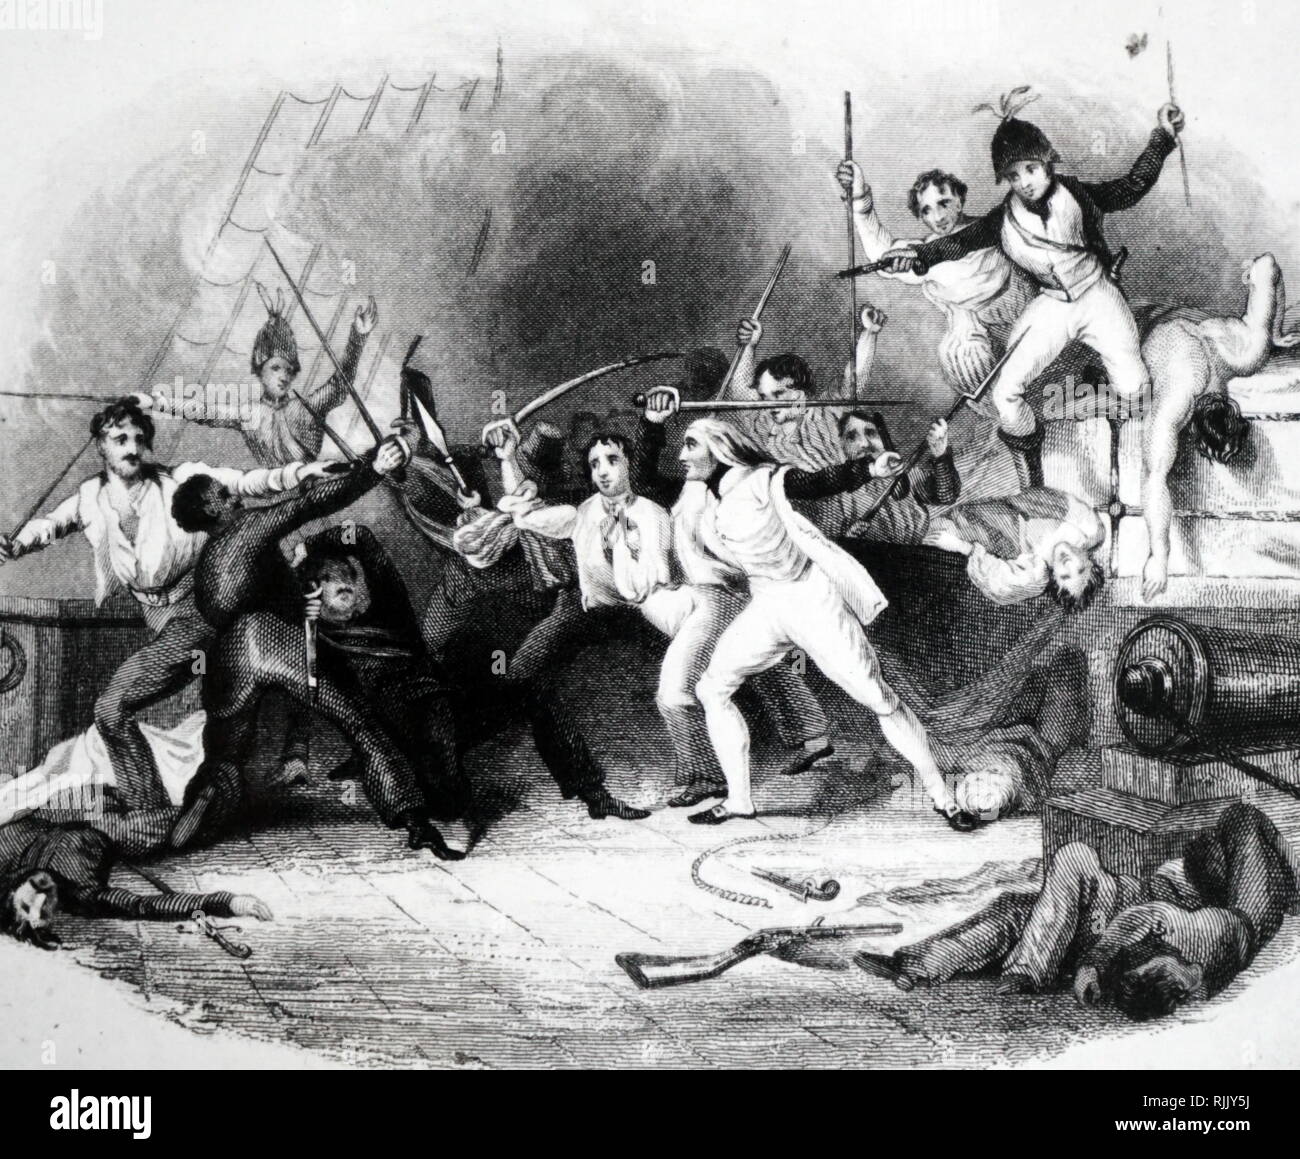 Abbildung: British Naval Held, Horatio Nelson (später Lord Nelson), führt ein Internat Partei zu ergreifen, eine amerikanische Privateer (Pirate), Behälter. 1777 Stockfoto